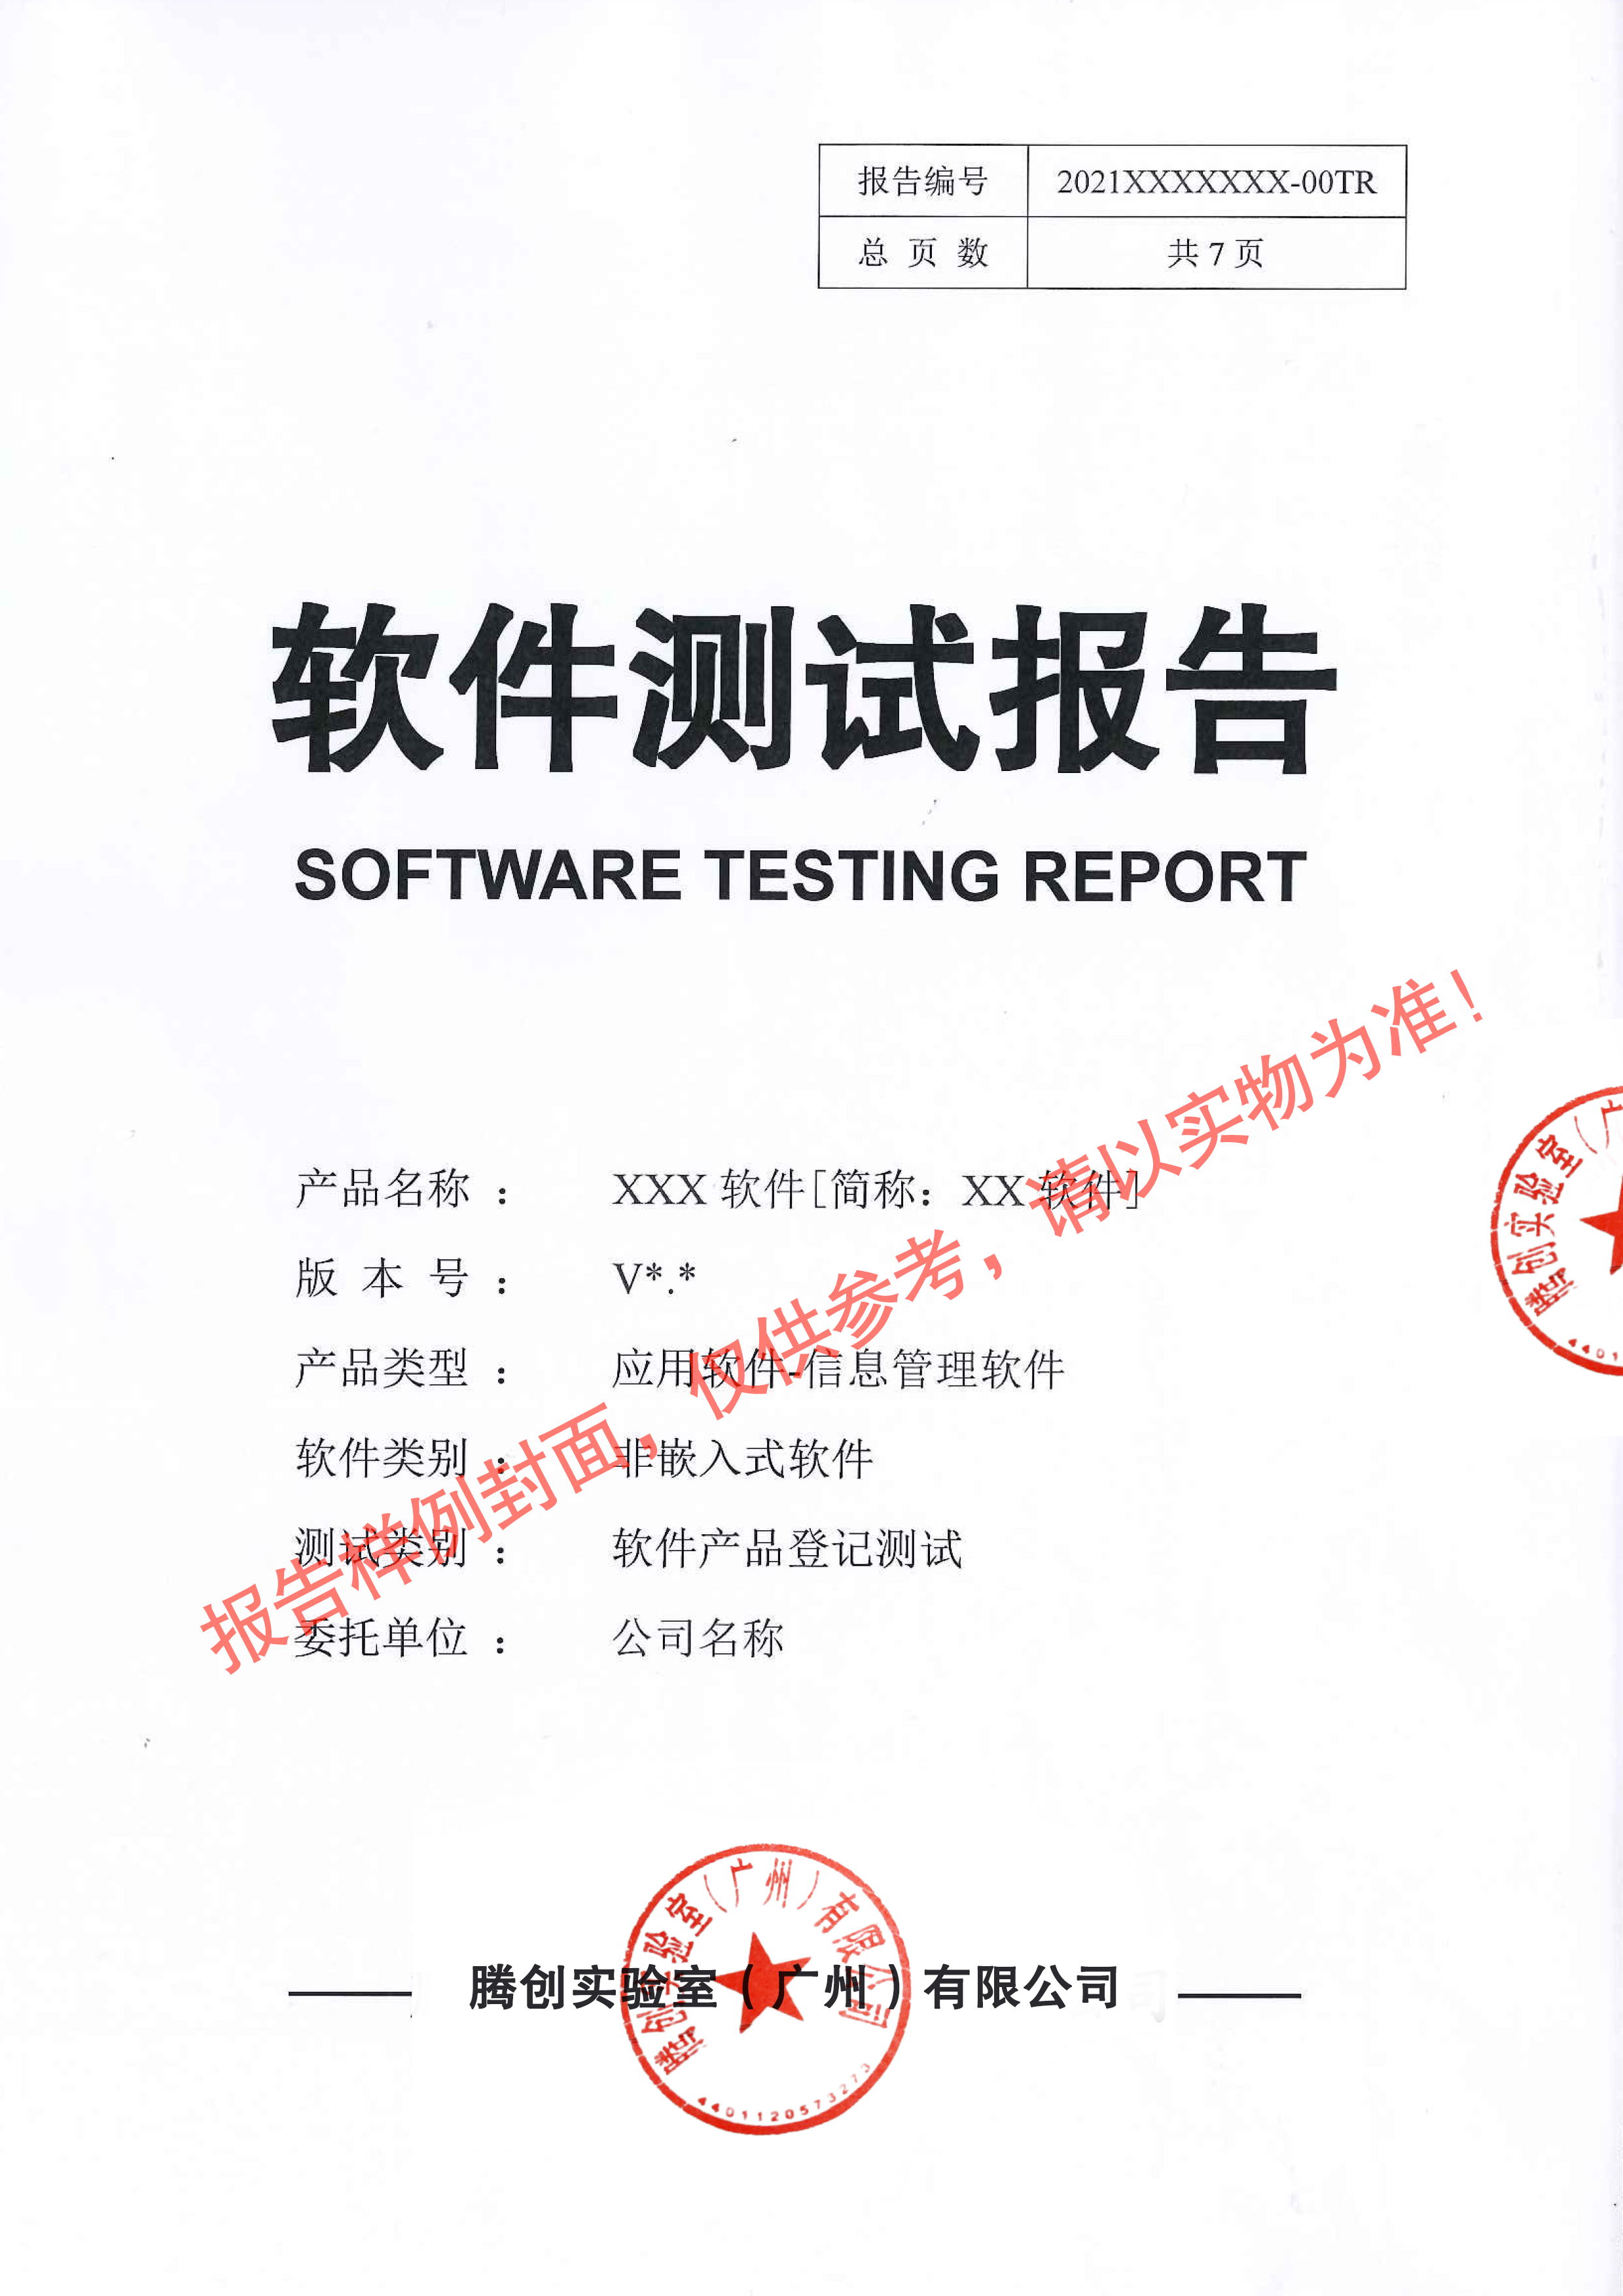 软件功能测试机构-功能测试报告